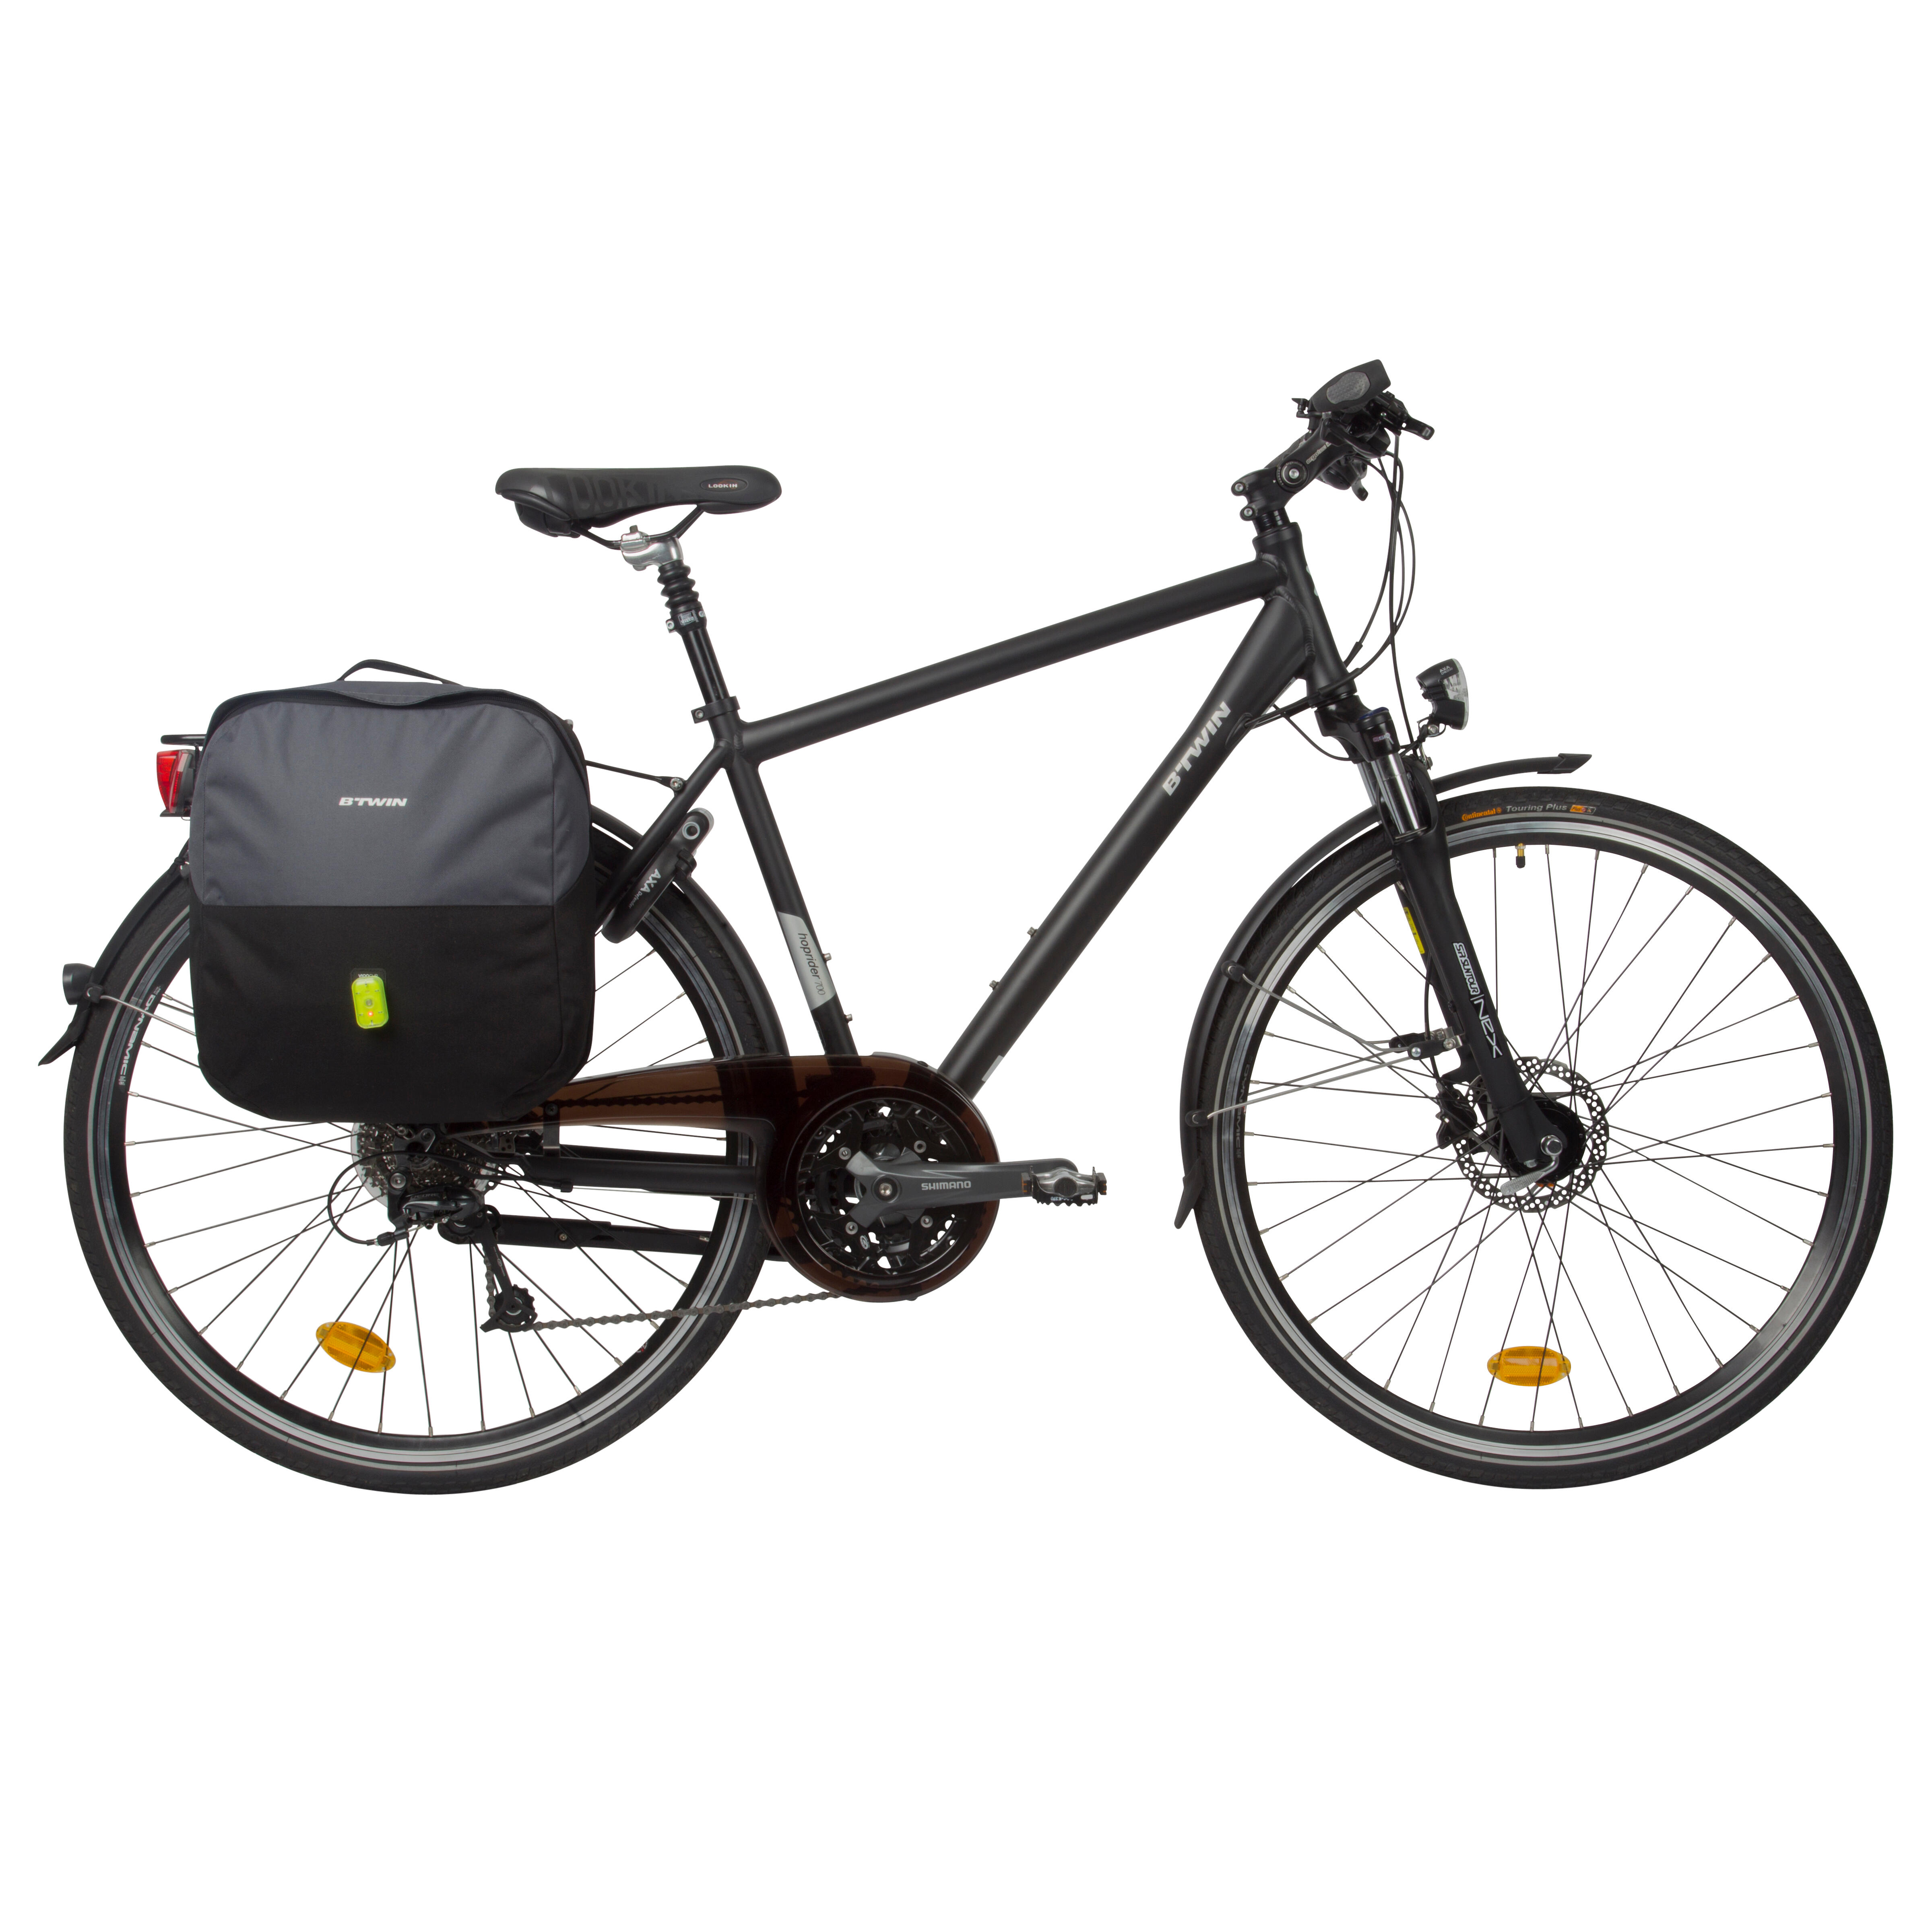 กระเป๋าติดแร็คจักรยานรุ่น 100 ขนาด 15 ลิตร กระเป๋ากีฬา แร็คจักรยาน, กระเป๋าติดจักรยาน และตะกร้า อุปกรณ์เสริมสำหรับจักรยาน จักรยานเสือหมอบ จักรยานซิตี้ไบค์ จักรยานไฮบริดและทัวว์ริ่ง จักรยานเสือภูเขา